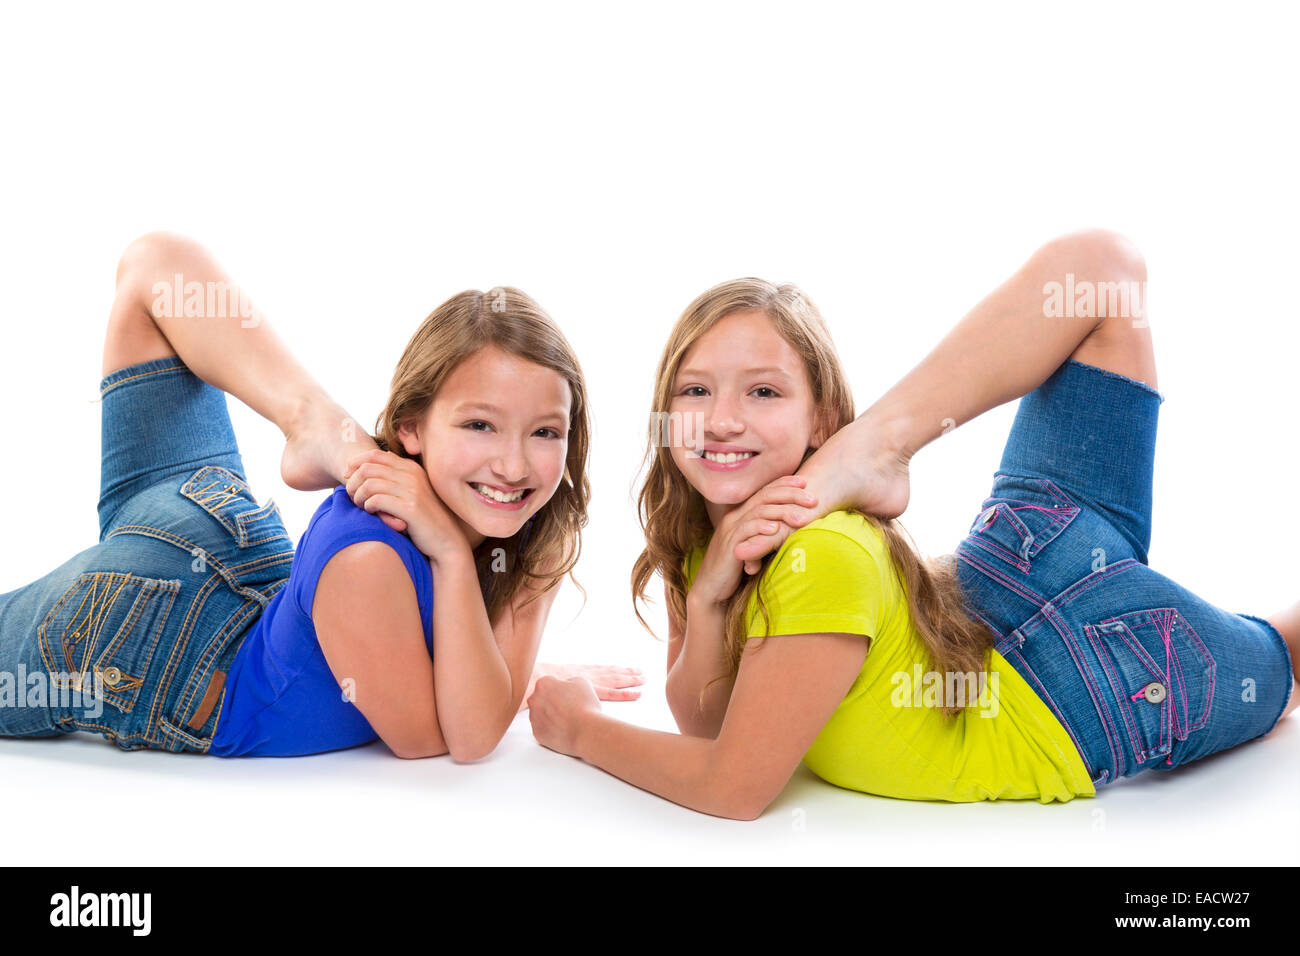 Lits enfant soeurs souple symétrique à l'heureux sur fond blanc Banque D'Images